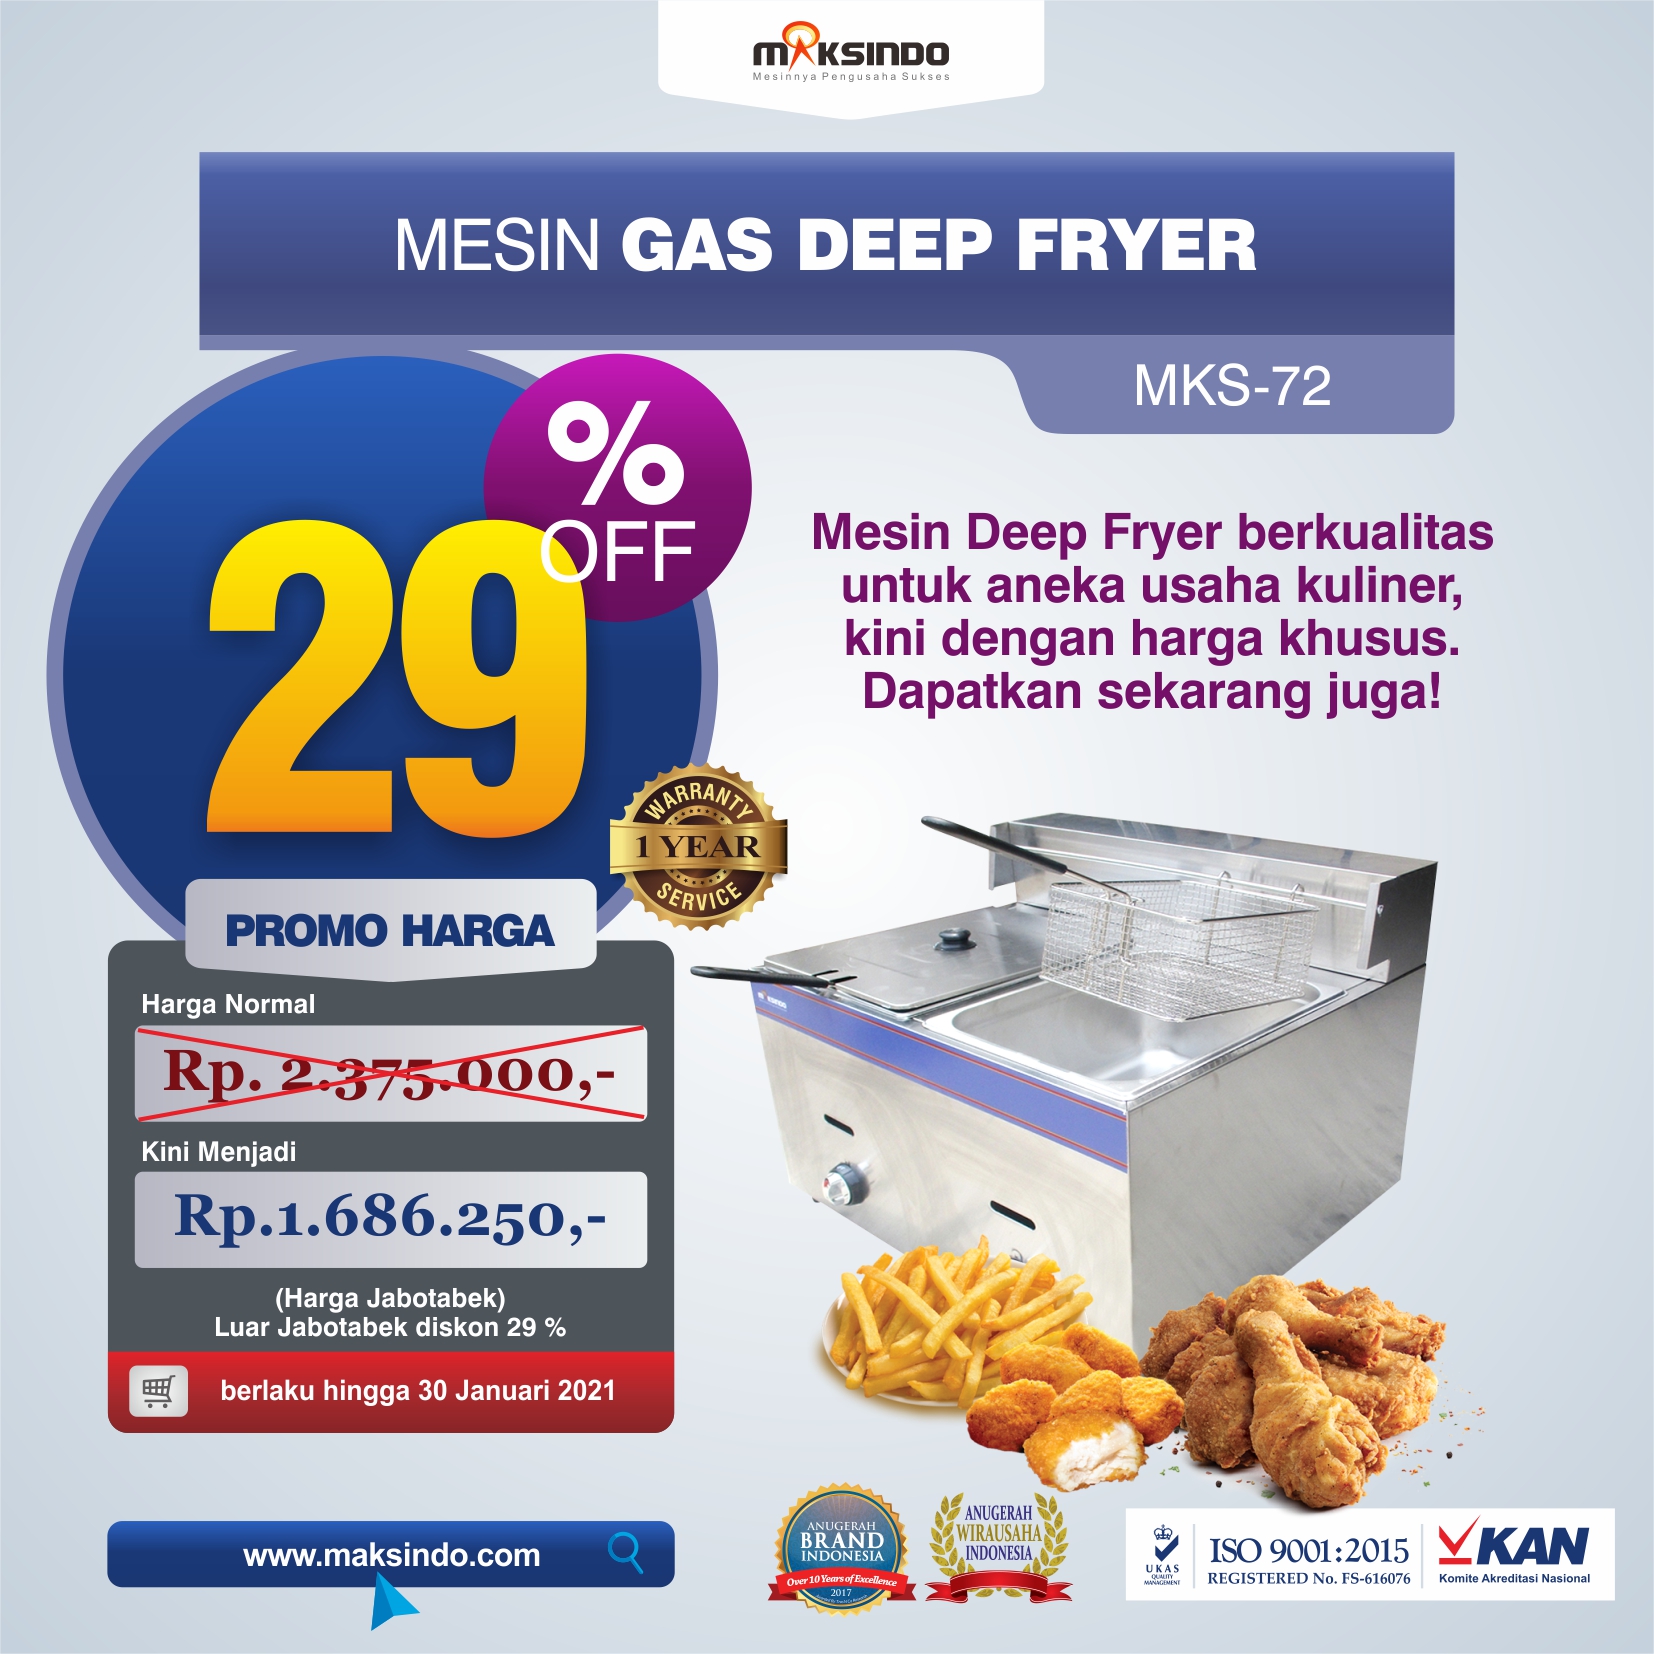 Jual Mesin Gas Deep Fryer MKS-72 di Bekasi